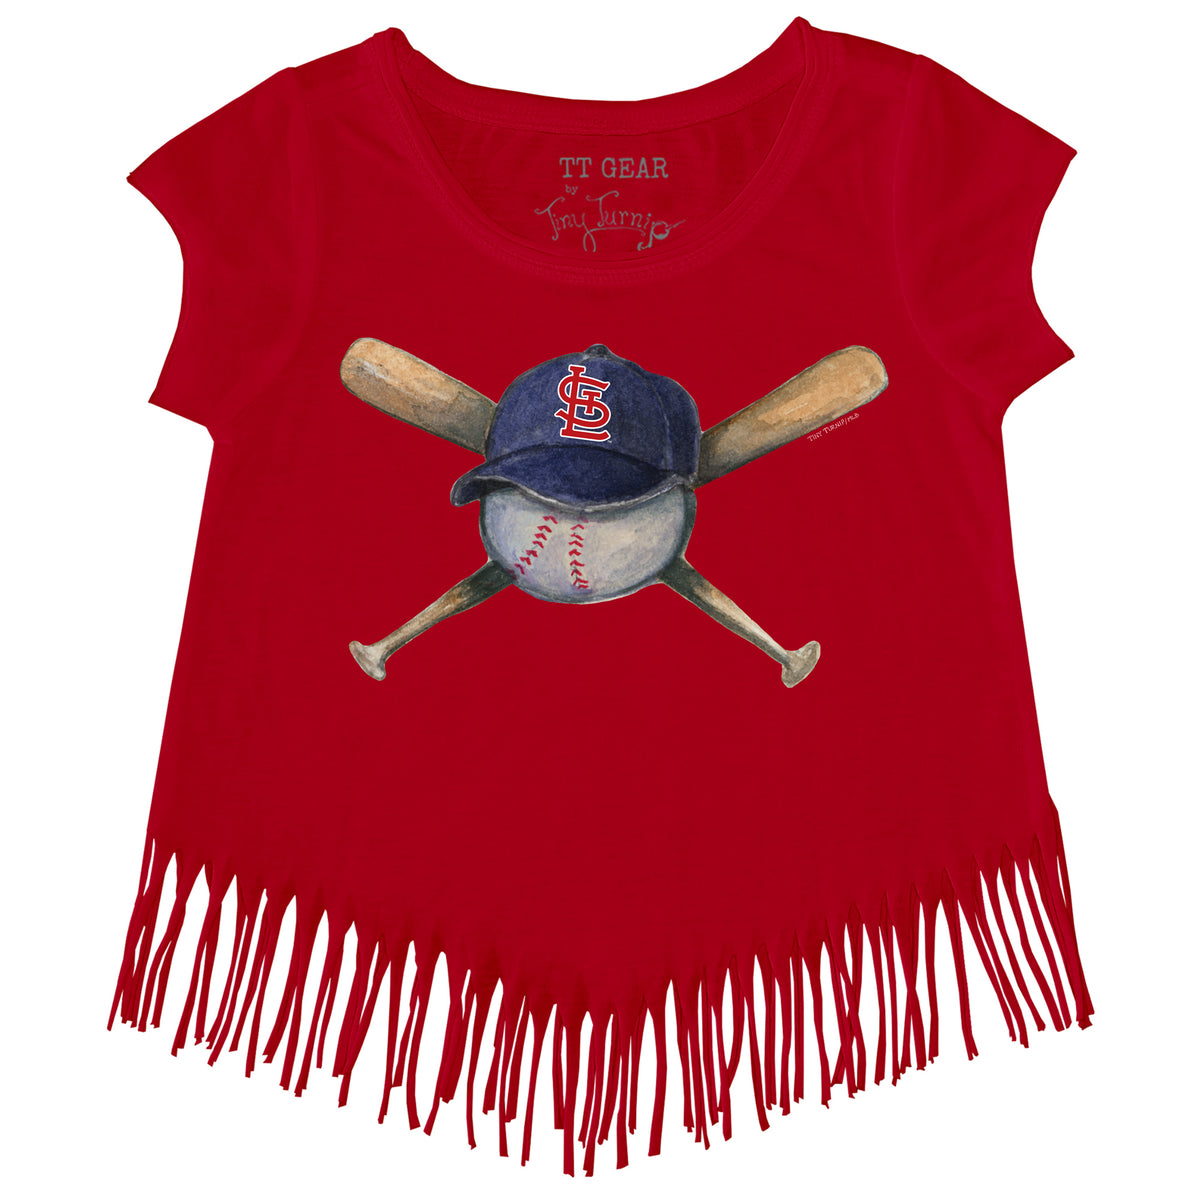 Girls Toddler Tiny Turnip Black Arizona Diamondbacks Baseball Cross Bats Fringe T-Shirt Size: 2T